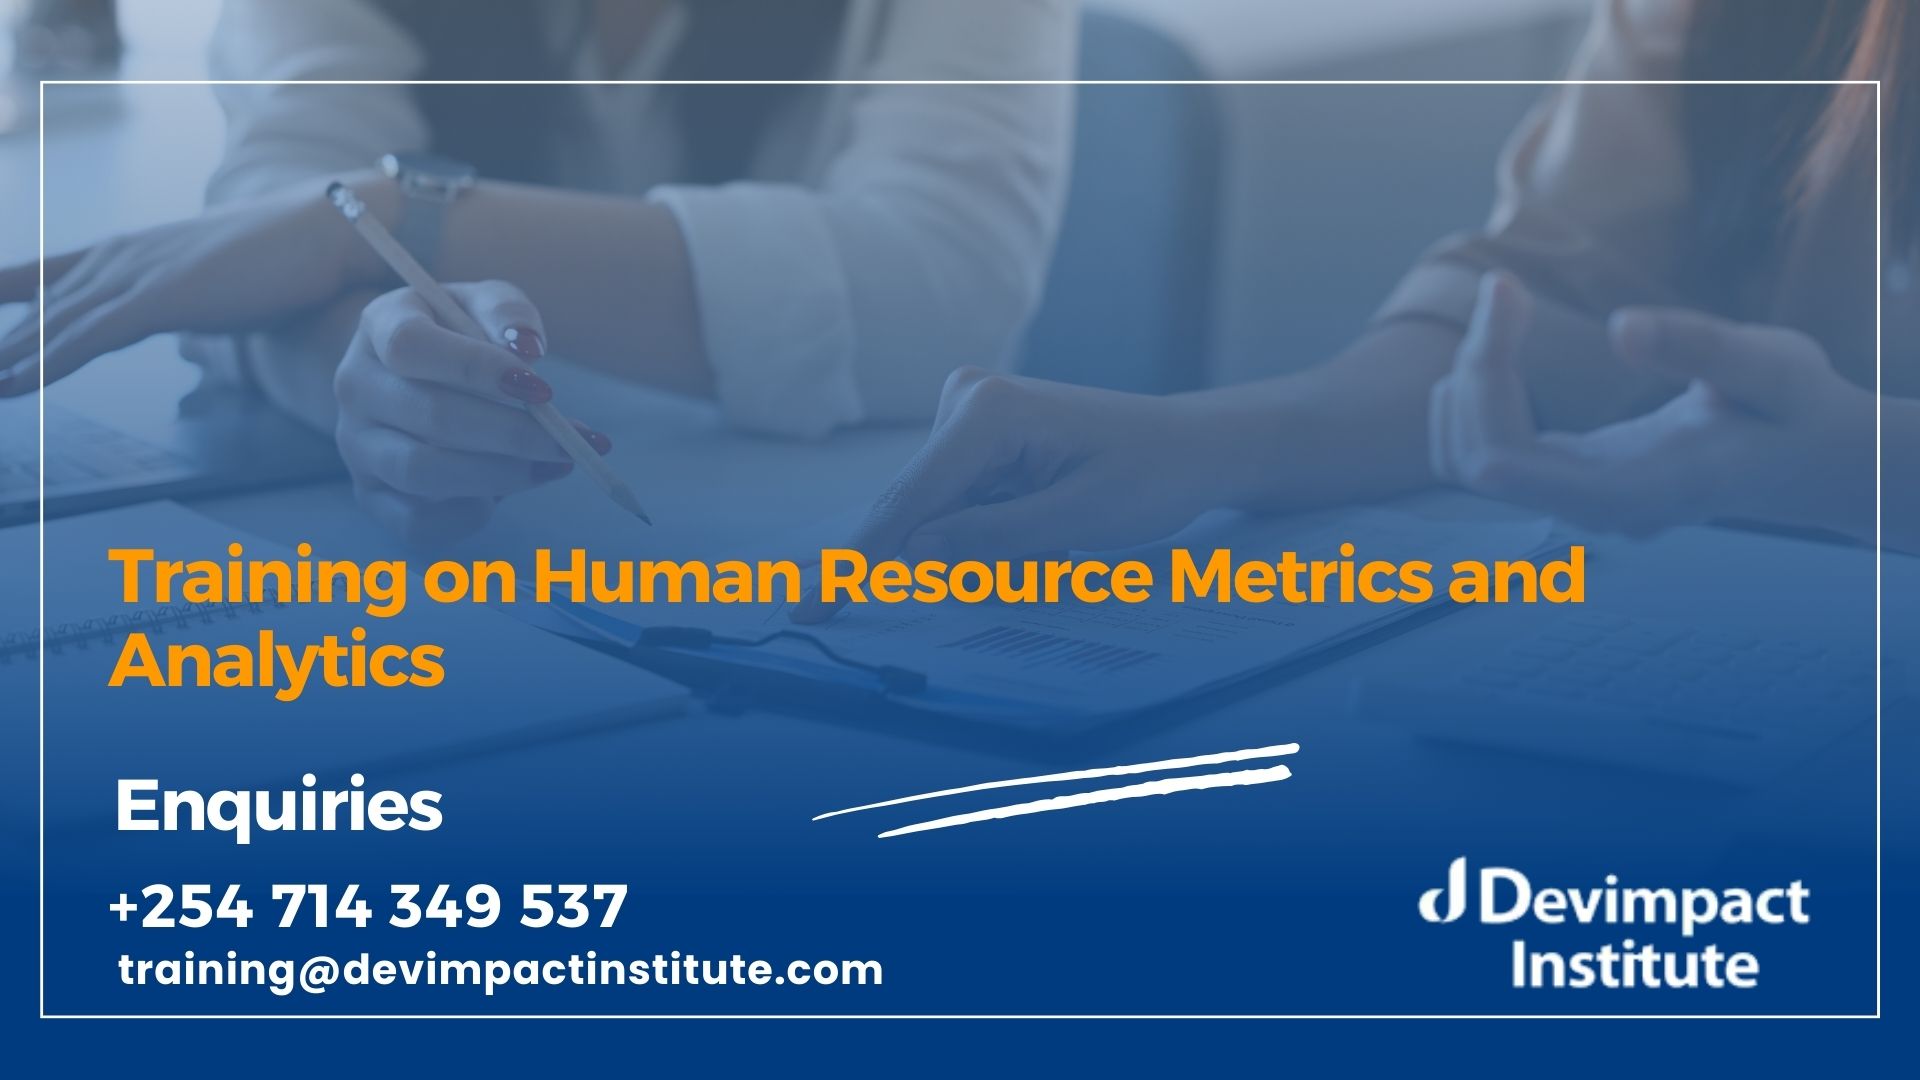 Training on Human Resource Metrics and Analytics, Devimpact Institute, Nairobi, Kenya